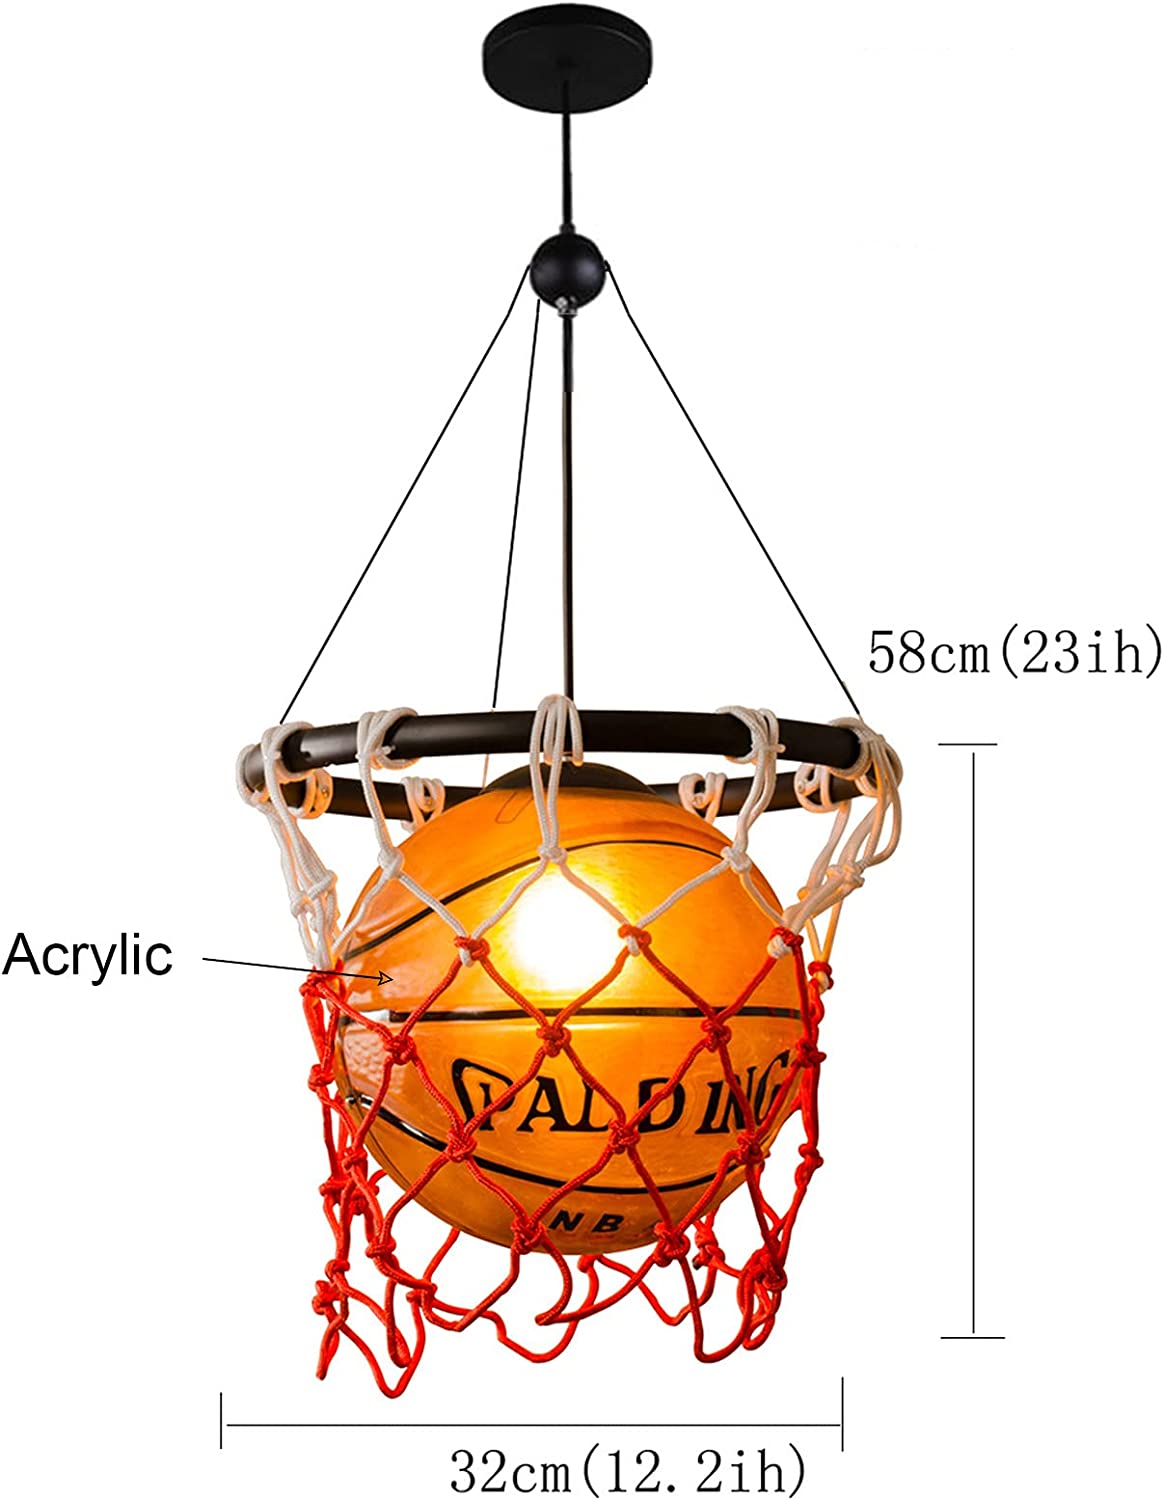 Chandelier Ceiling Pendant Light Basketball Lighting